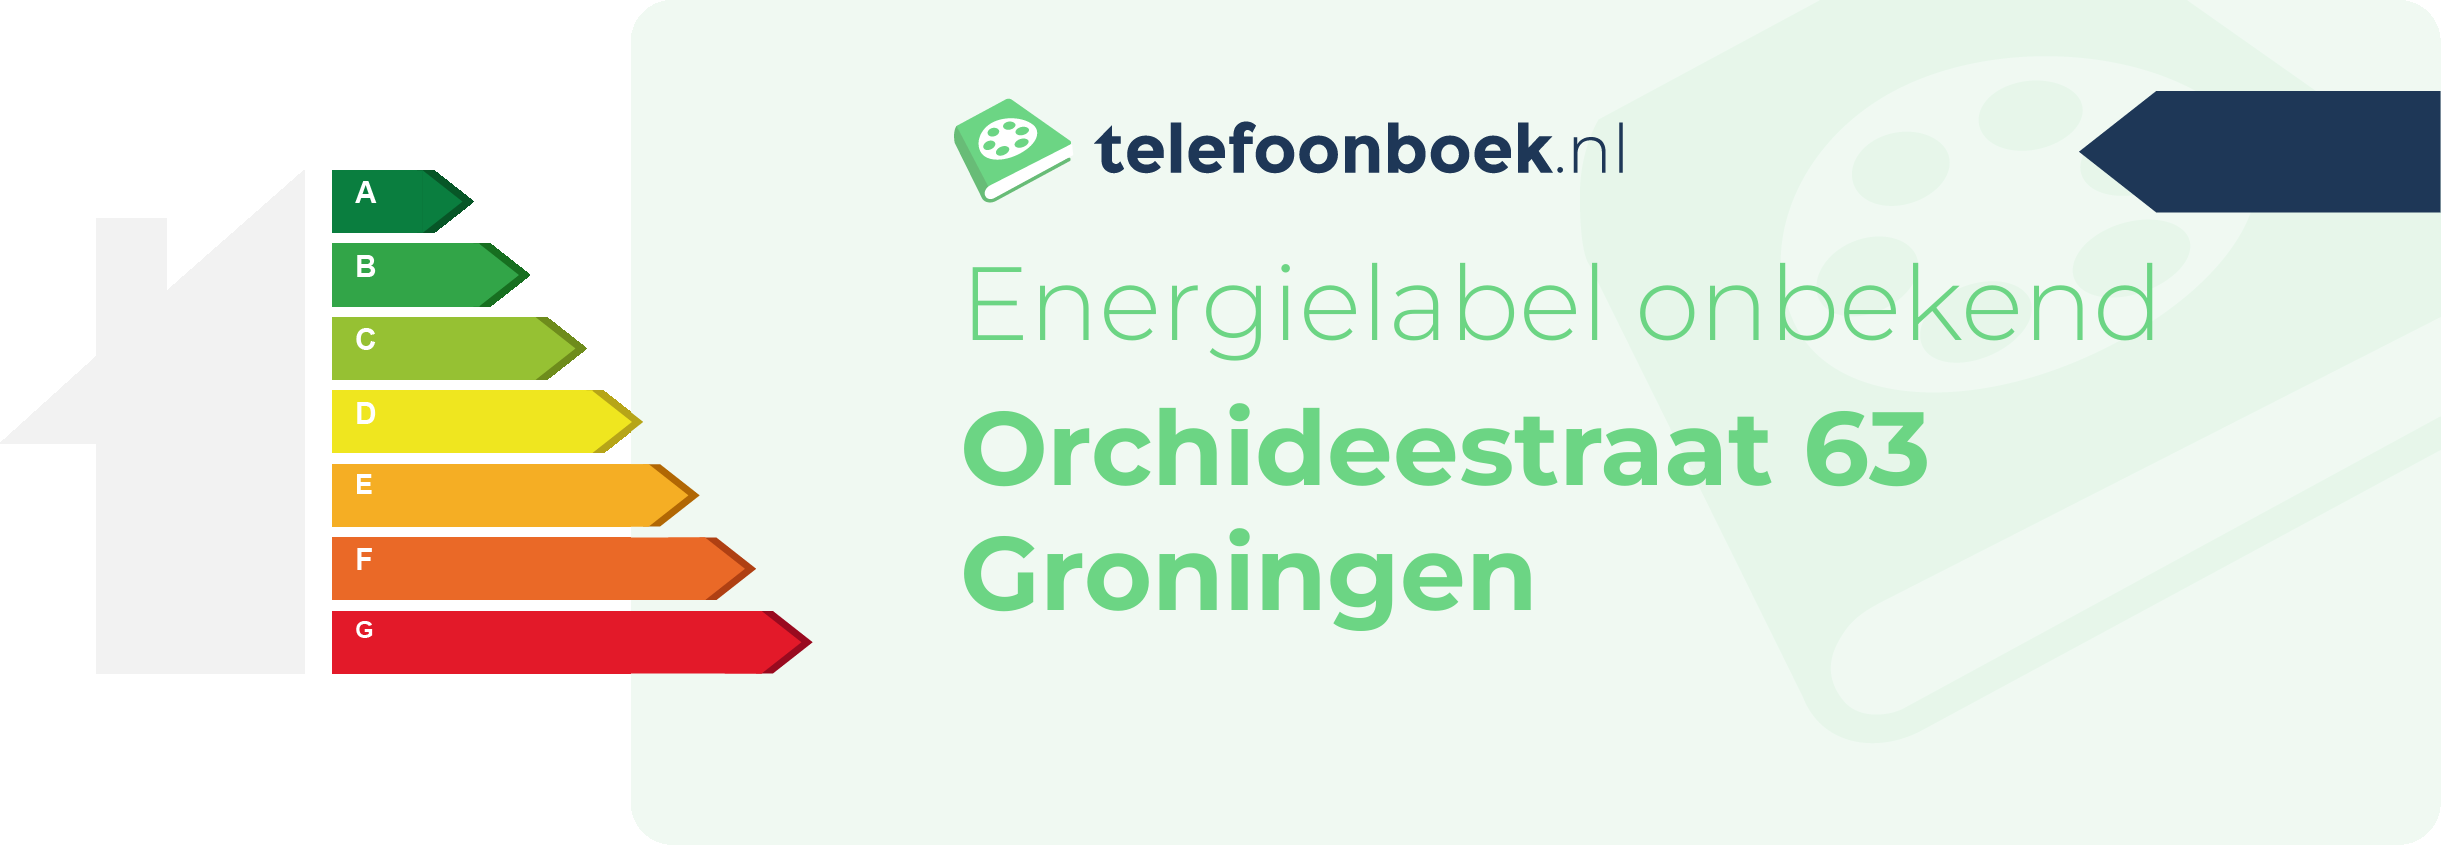 Energielabel Orchideestraat 63 Groningen